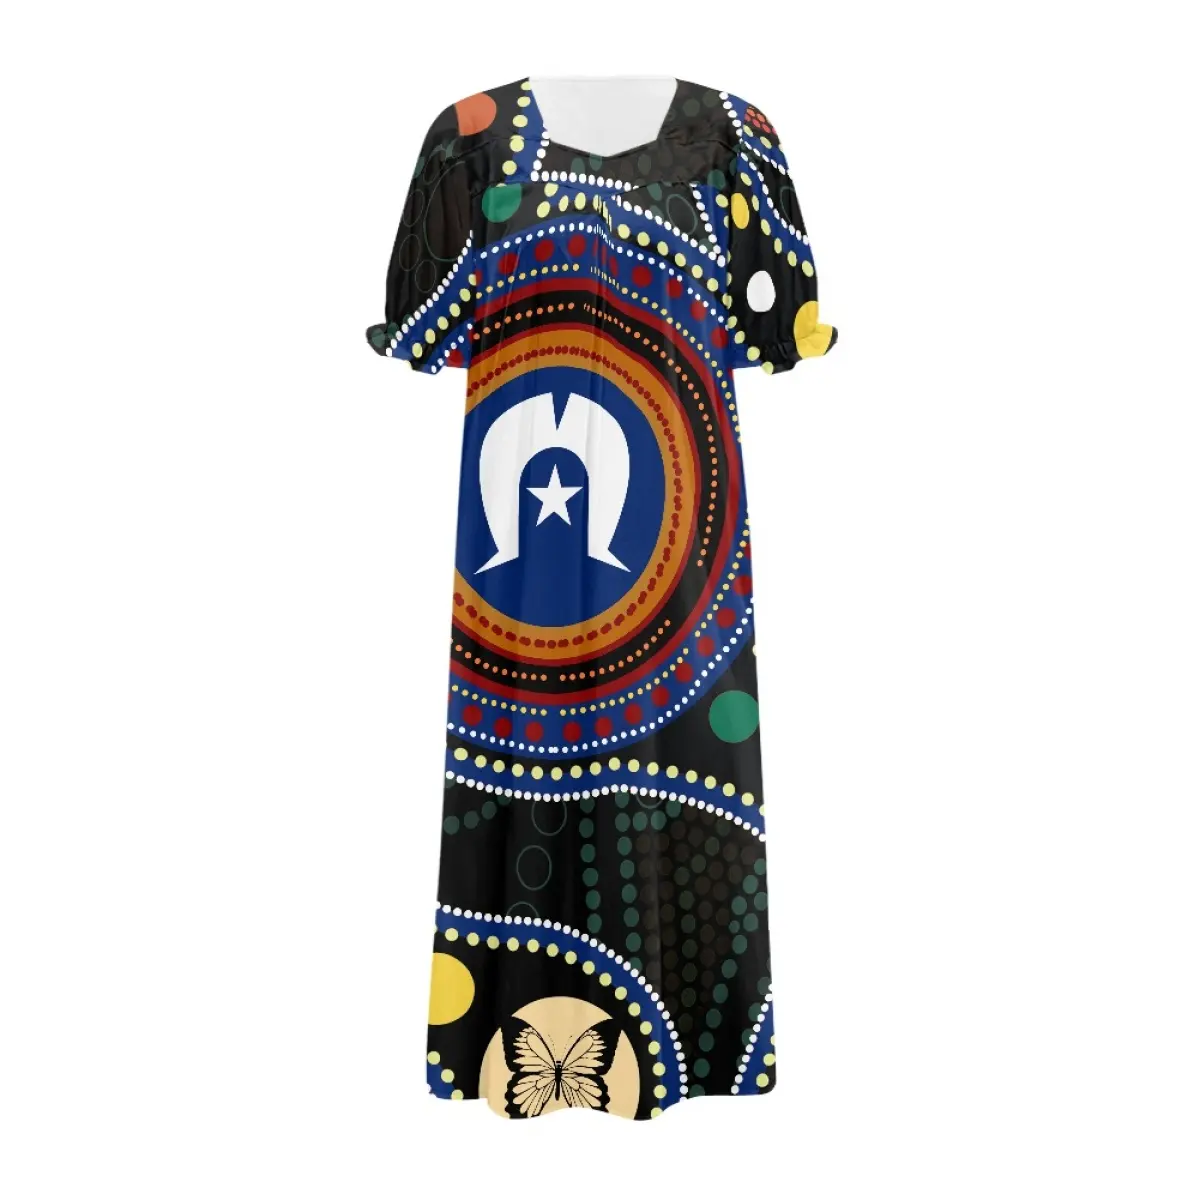 فستان مريح كاجوال شهير بأكمام فقاعية بتصميم مخصص من الشركات المصنعة لملابس جزر المضيق توريس للبيع المباشر